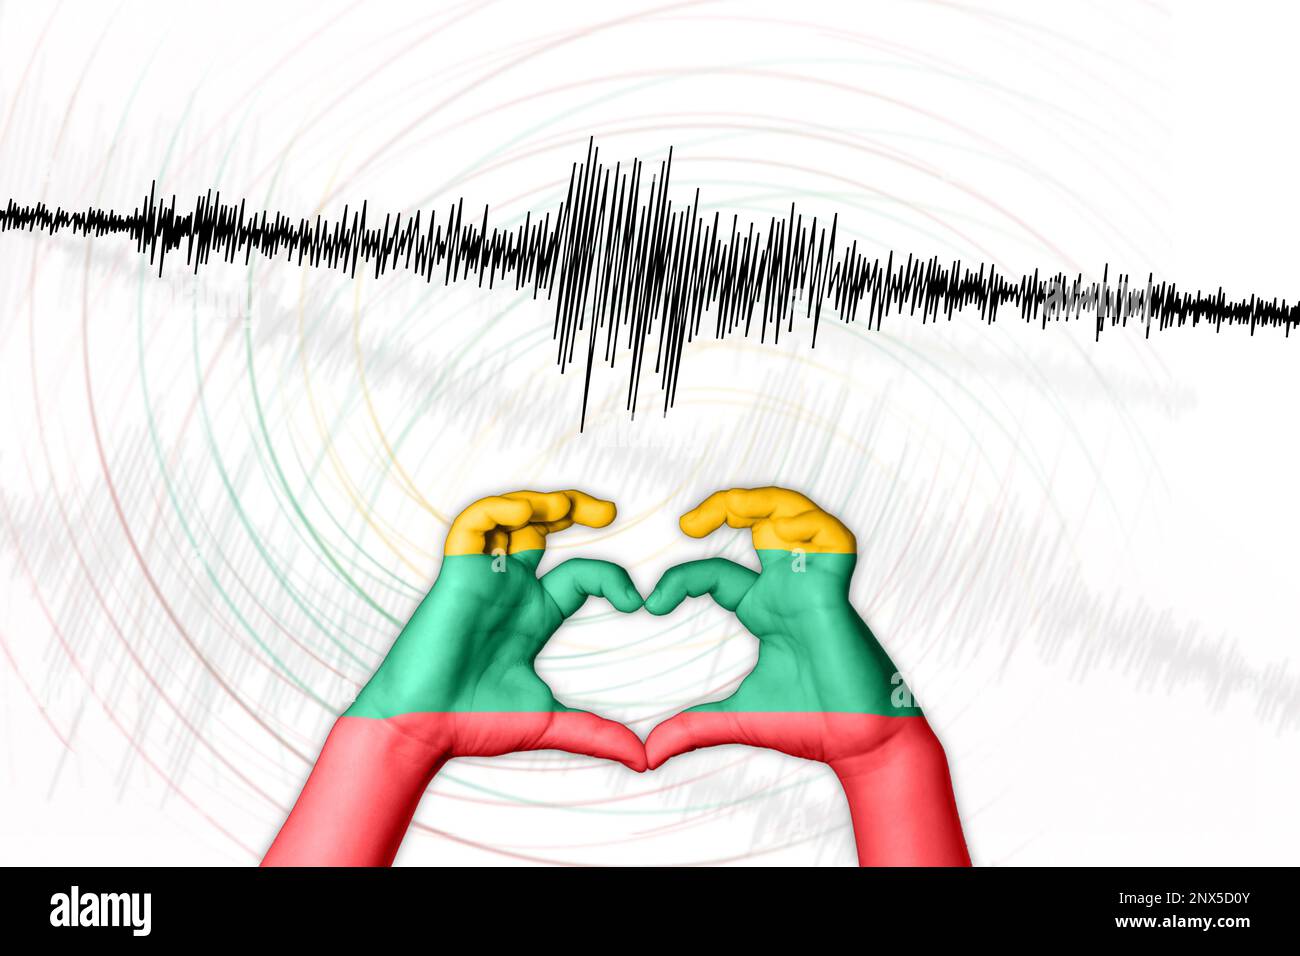 Erdbeben Litauen Symbol der Heart Richter Scale Stockfoto